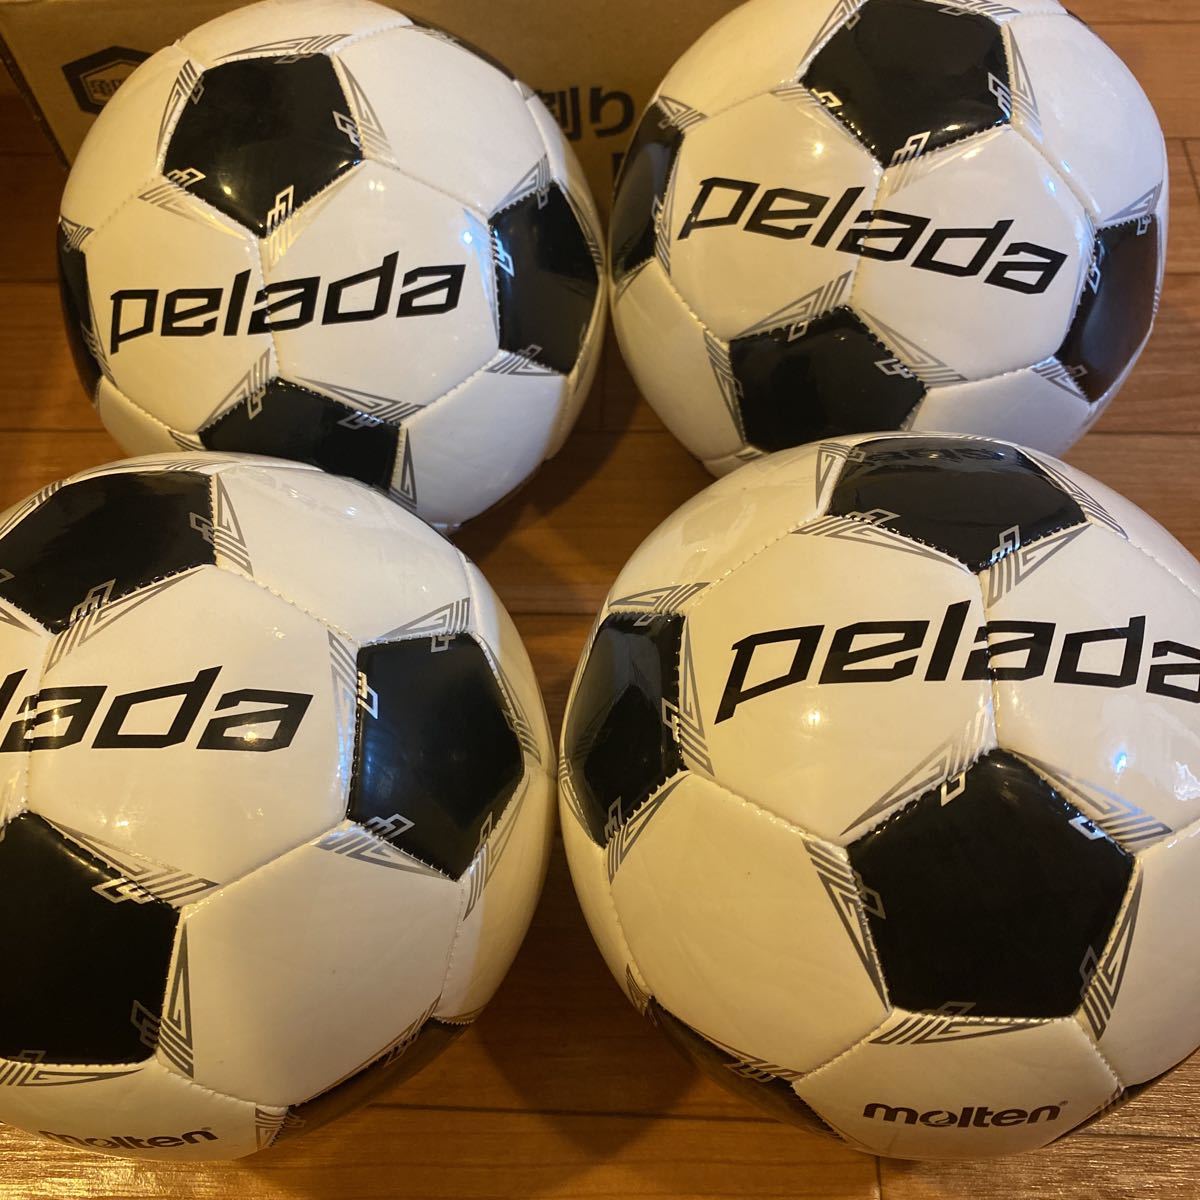 サッカーボール サインボール pleads 4個セット Pelada 3号球 新品未使用 モルテン moltenの画像1